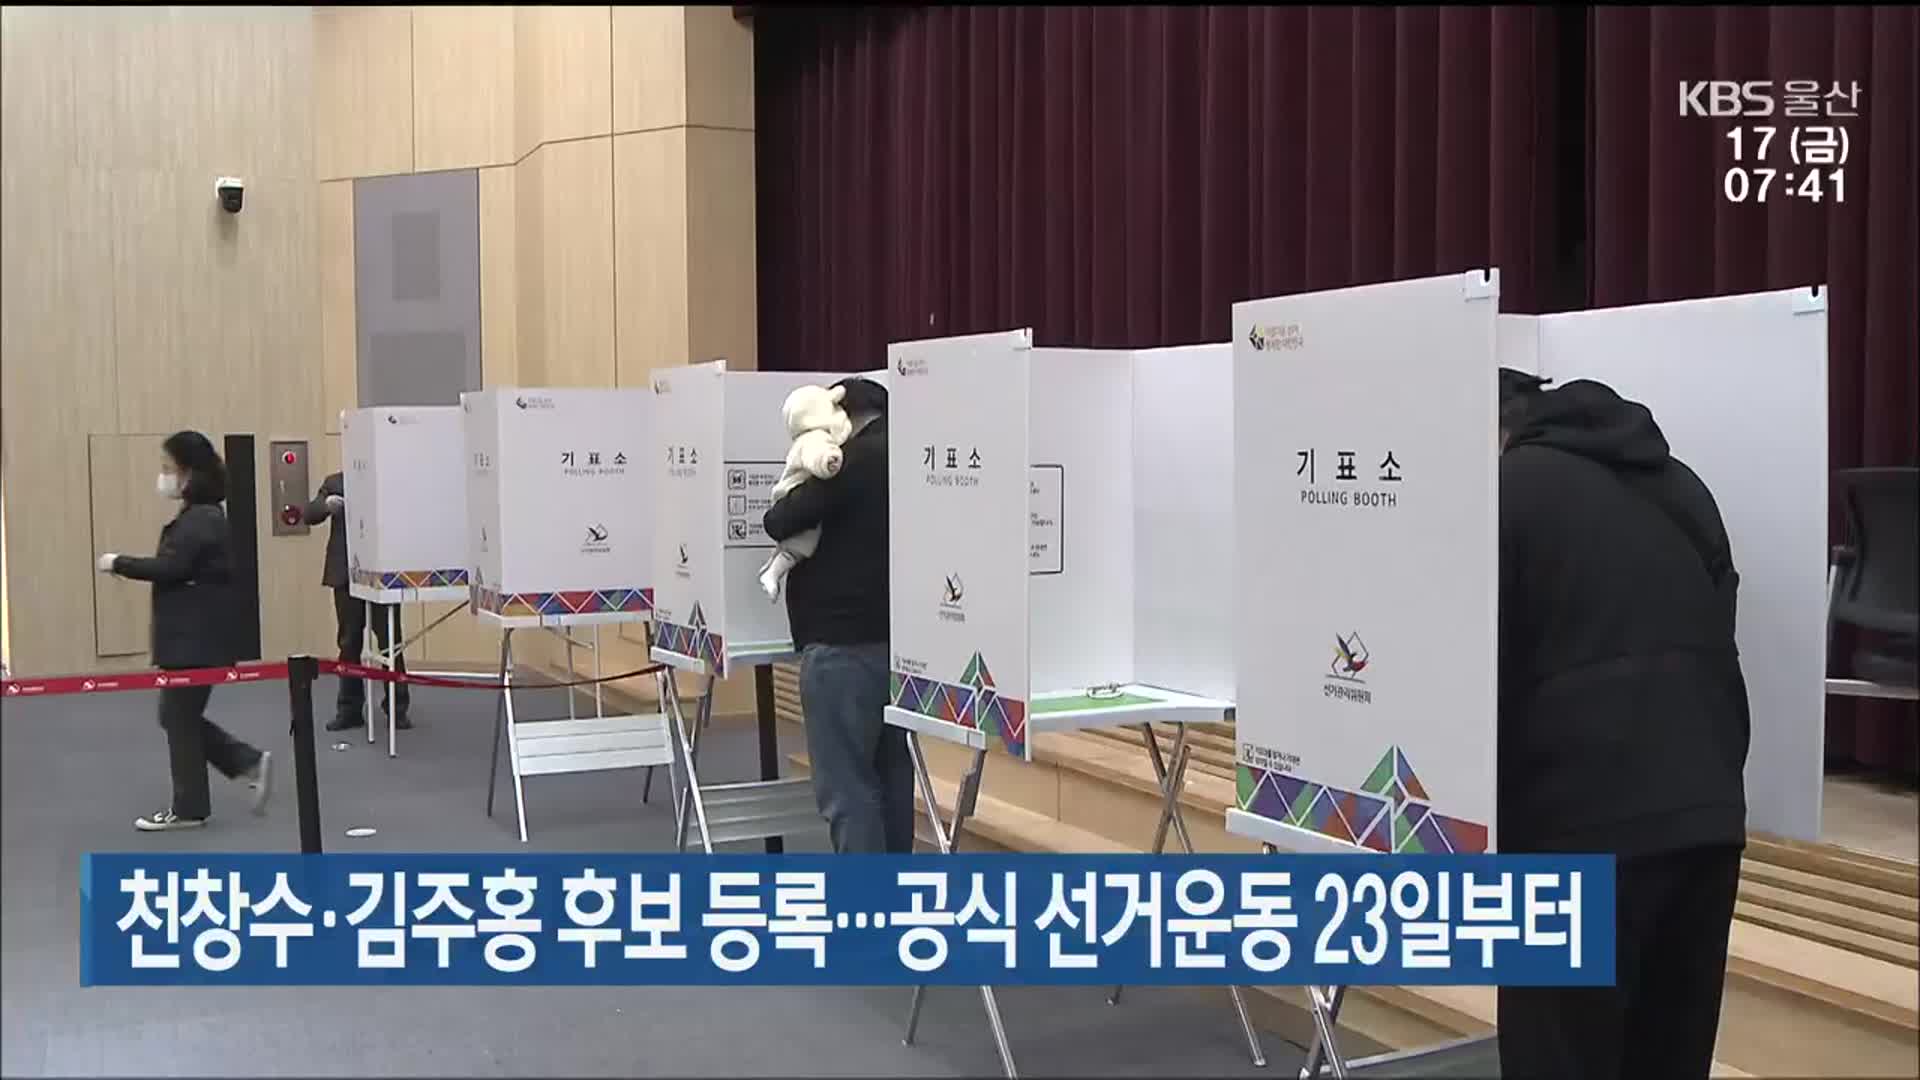 천창수·김주홍 후보 등록…공식 선거운동 23일부터